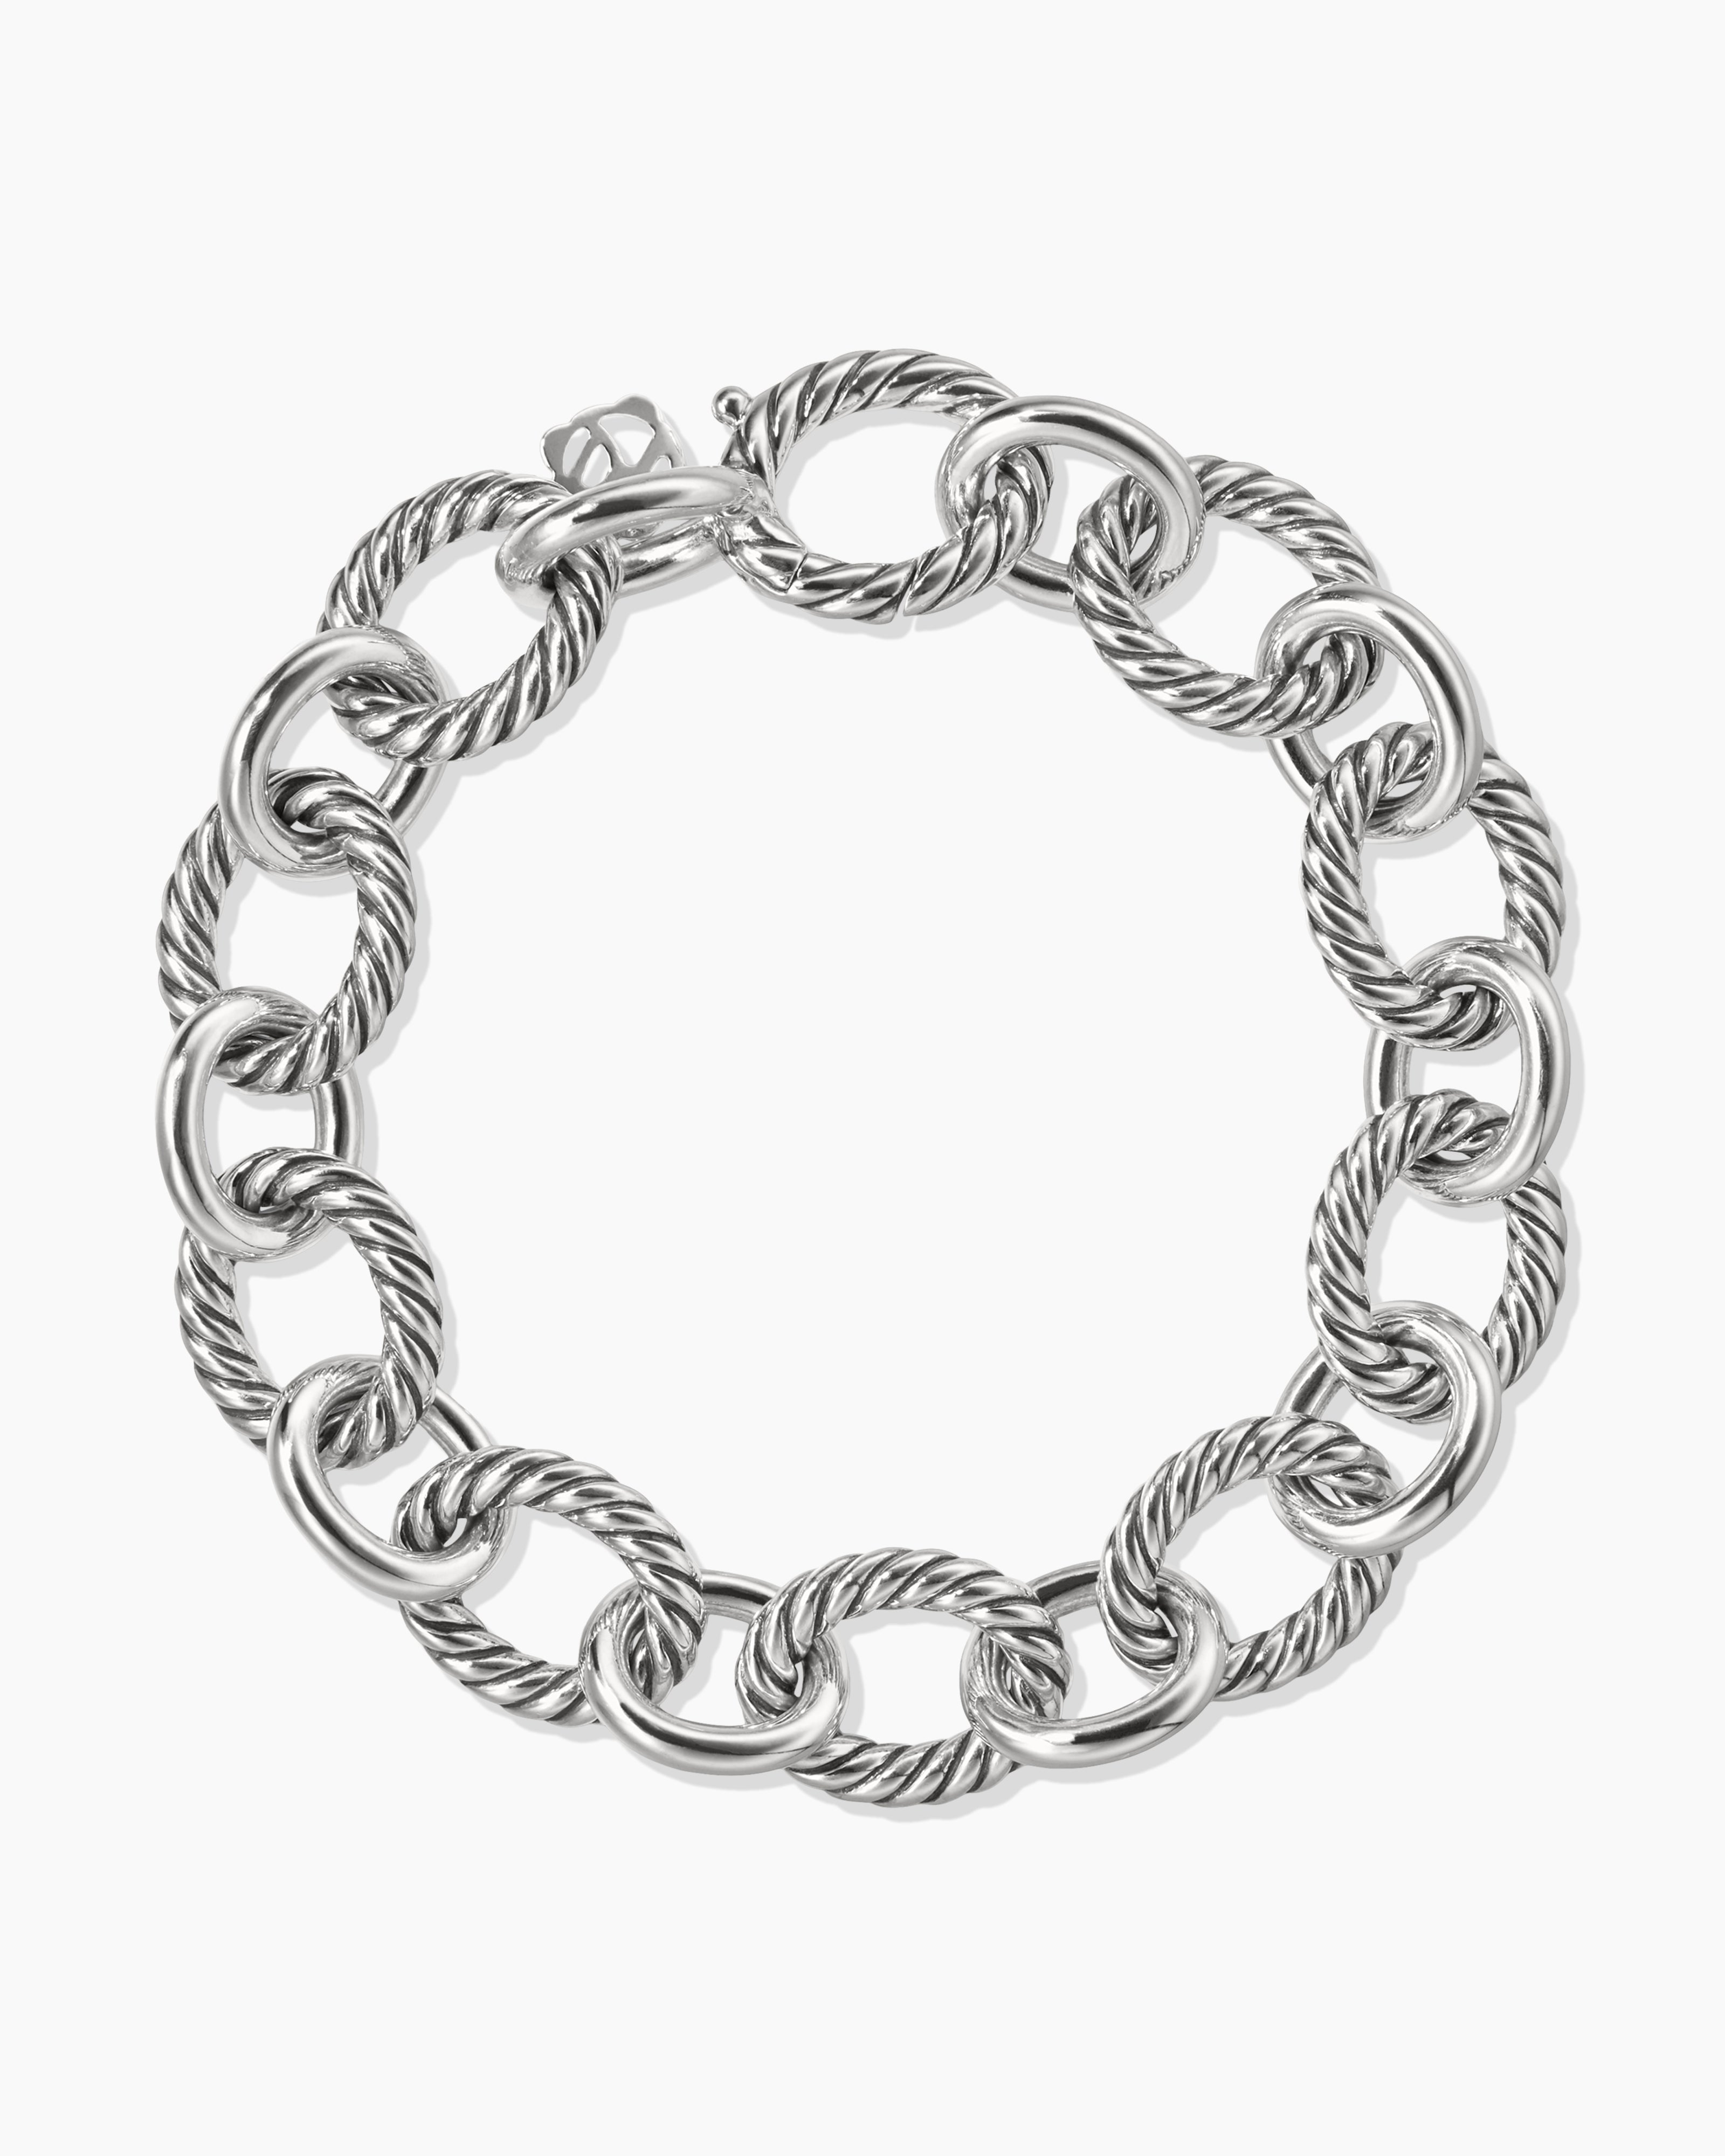 Buy Bracelet Extender Silver Online Shopping at